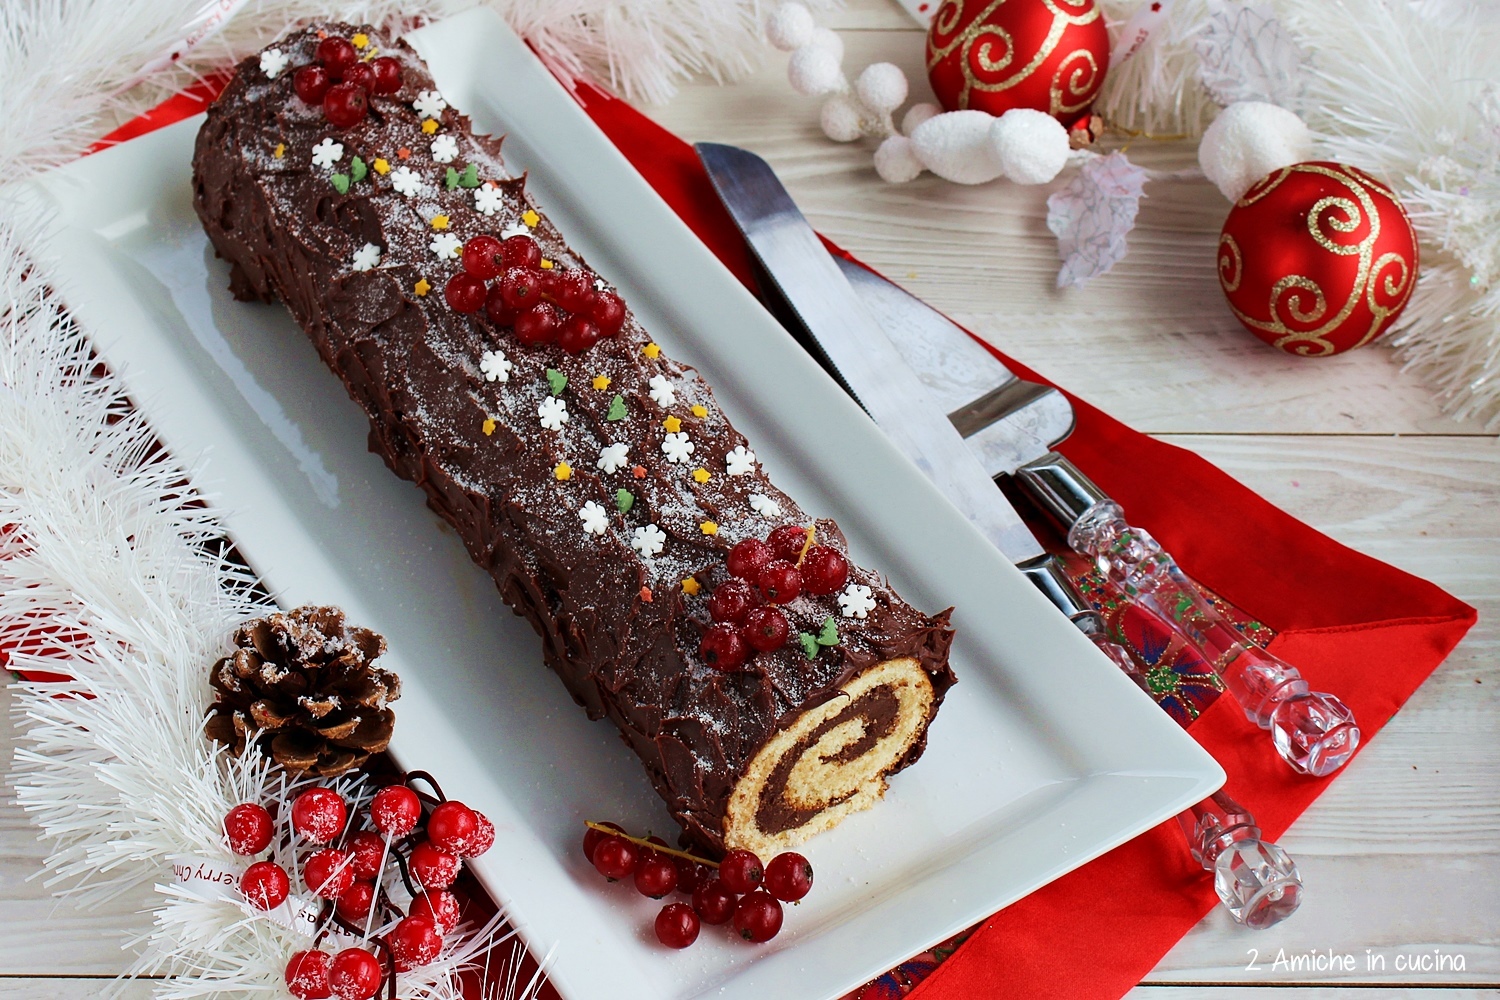 Decorazioni Tronchetto Di Natale.Tronchetto Al Cioccolato Buche De Noel 2 Amiche In Cucina